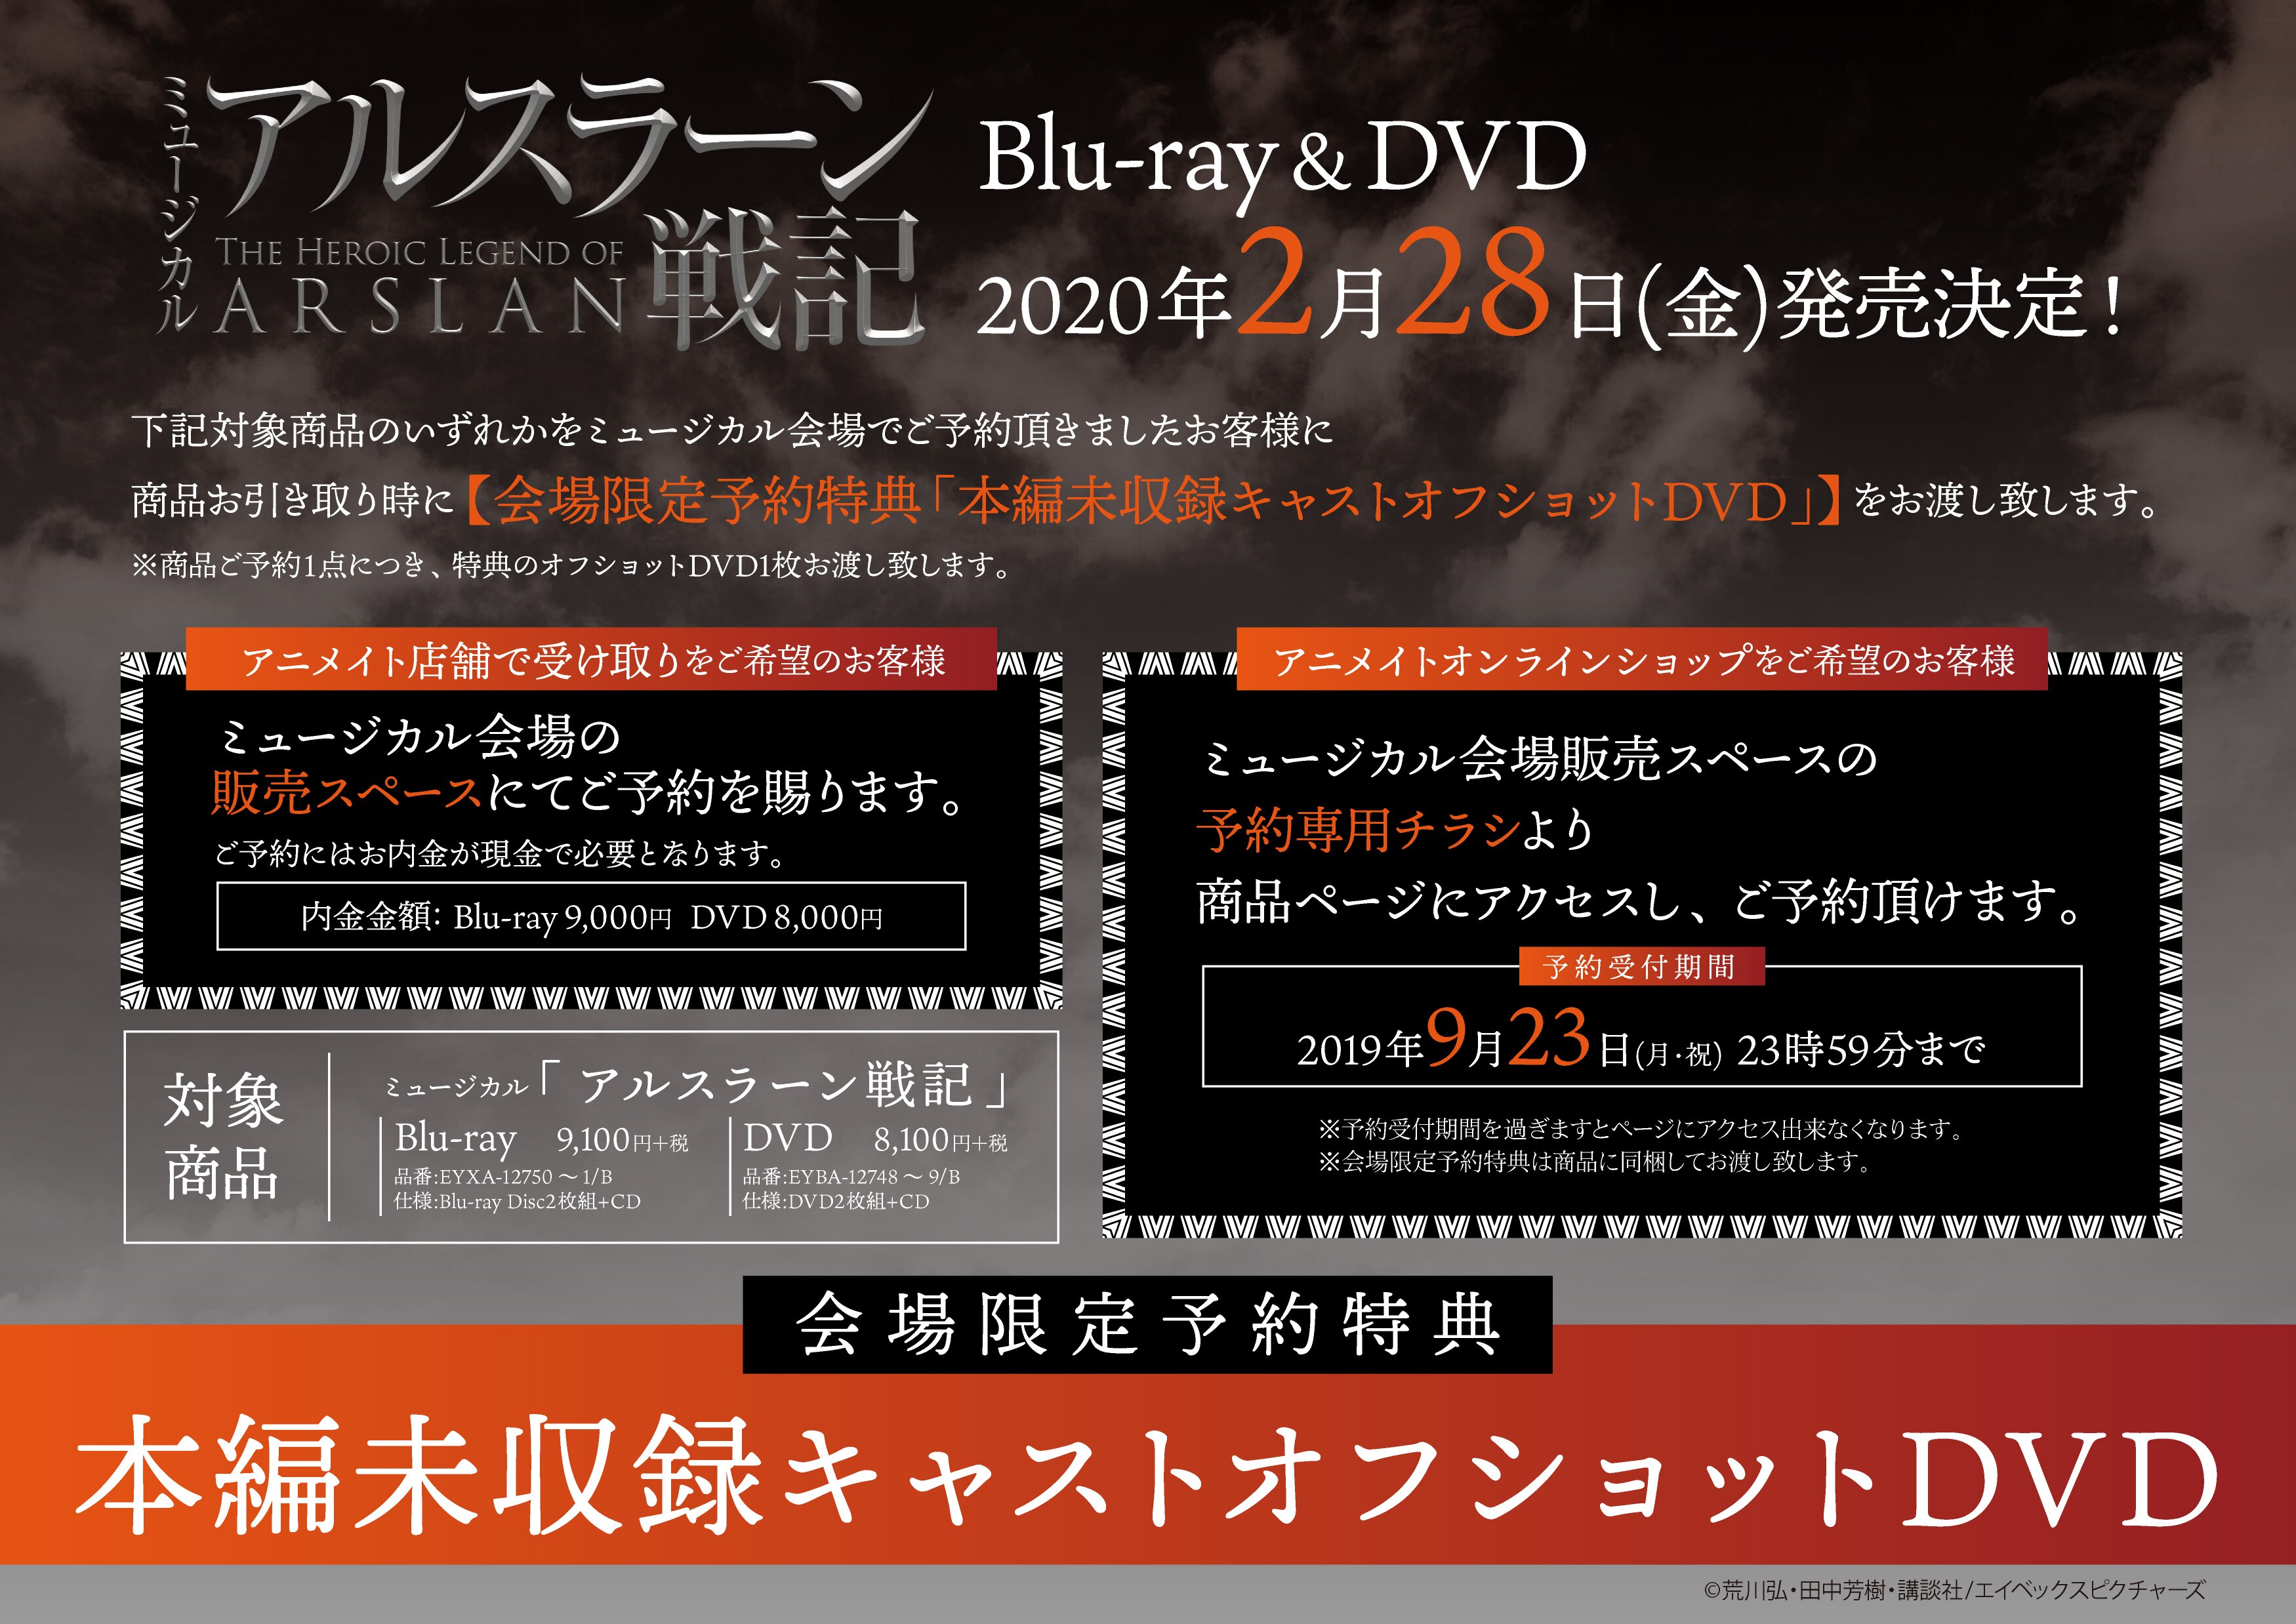 ミュージカル「アルスラーン戦記」Blu-ray&DVD会場予約特典が決定 